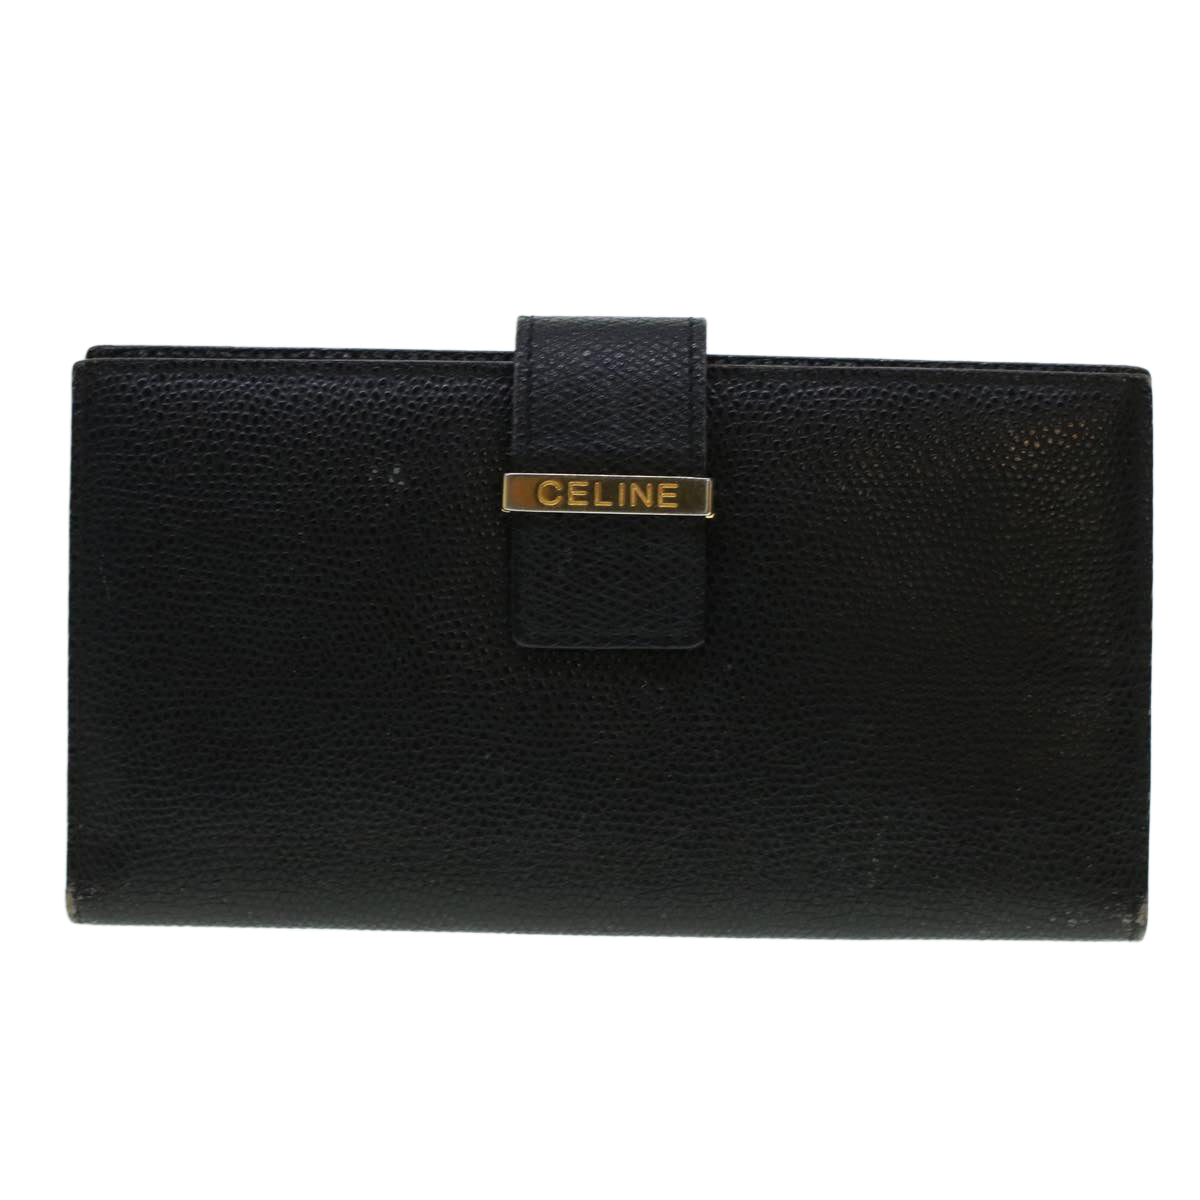 CELINE Macadam Canvas Wallet PVC Leather 3Set Brown Black Auth bs5381 - 0